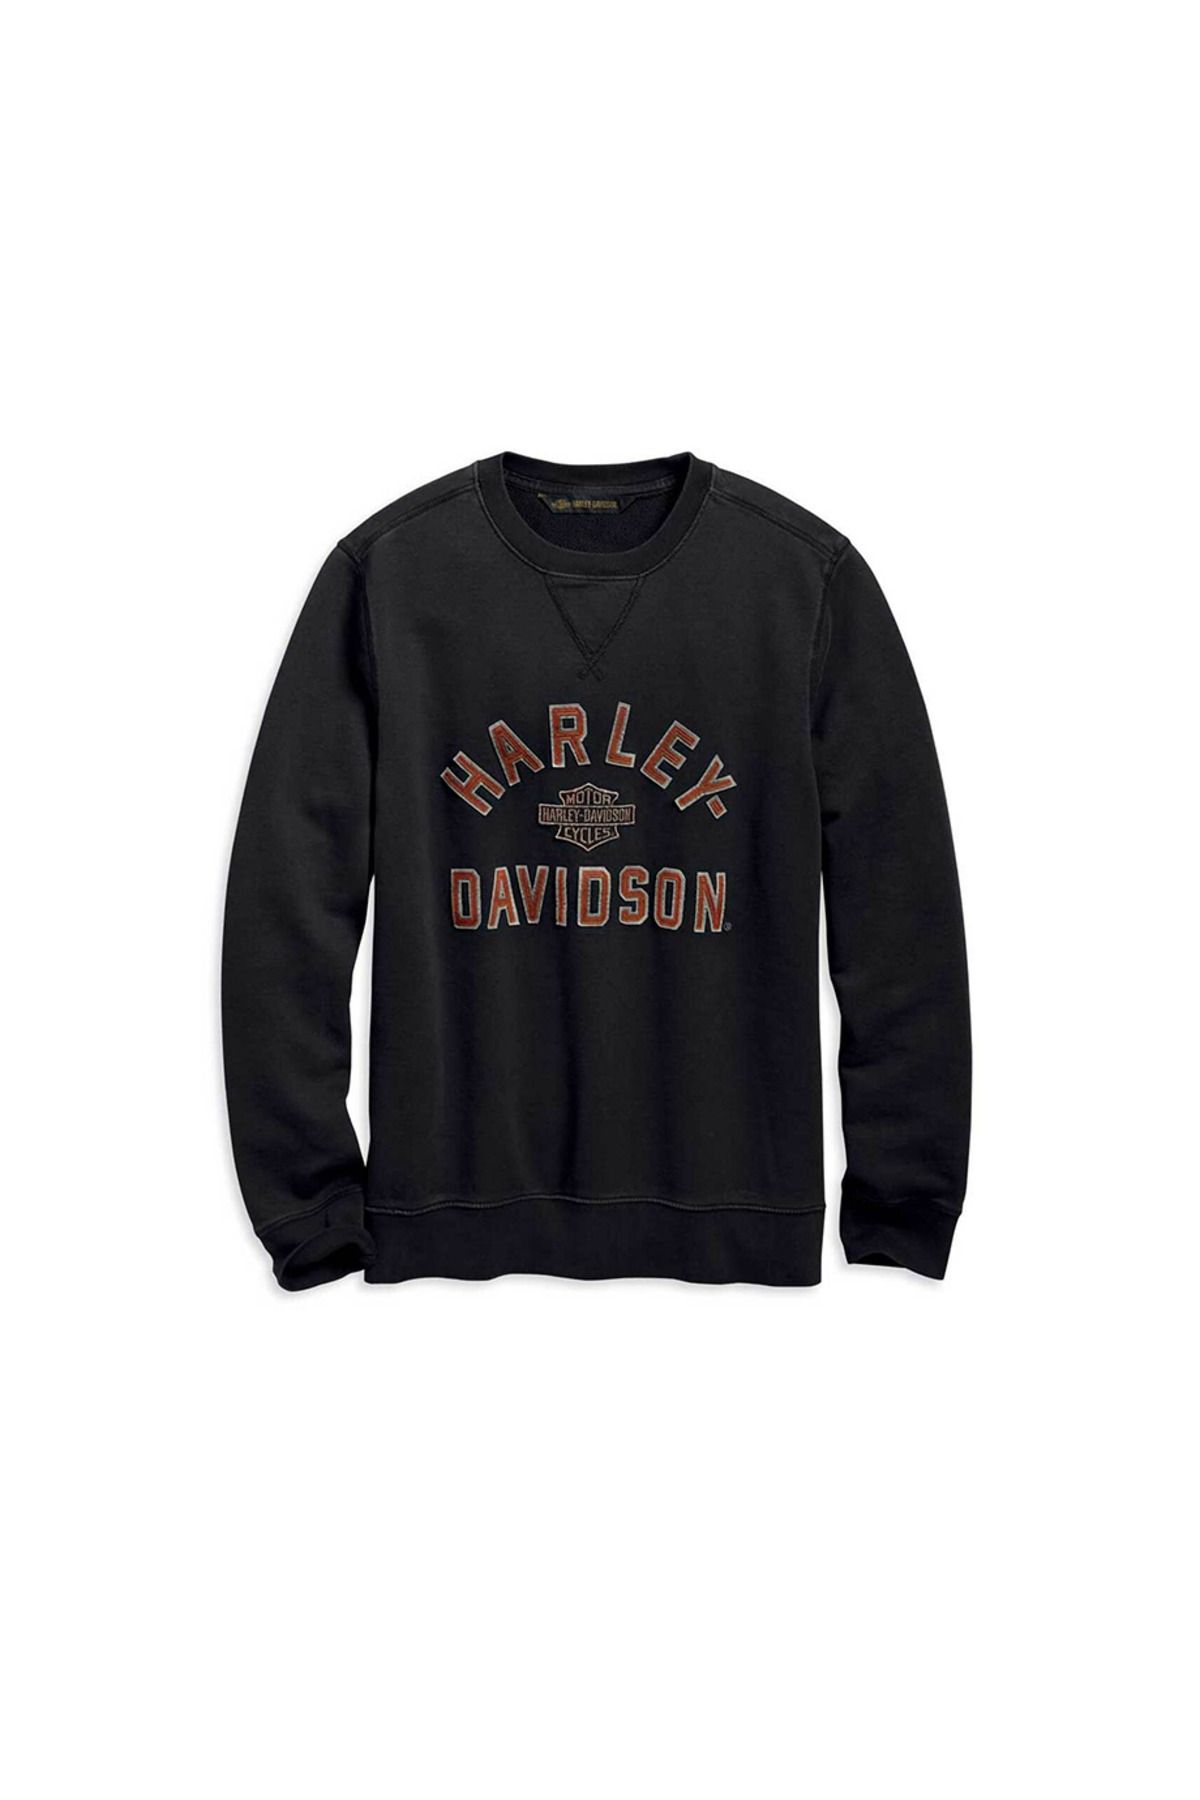 Harley Davidson Harley-davidson Men's Felt Letter Slim Fit Pullover Sweatshirt, Black